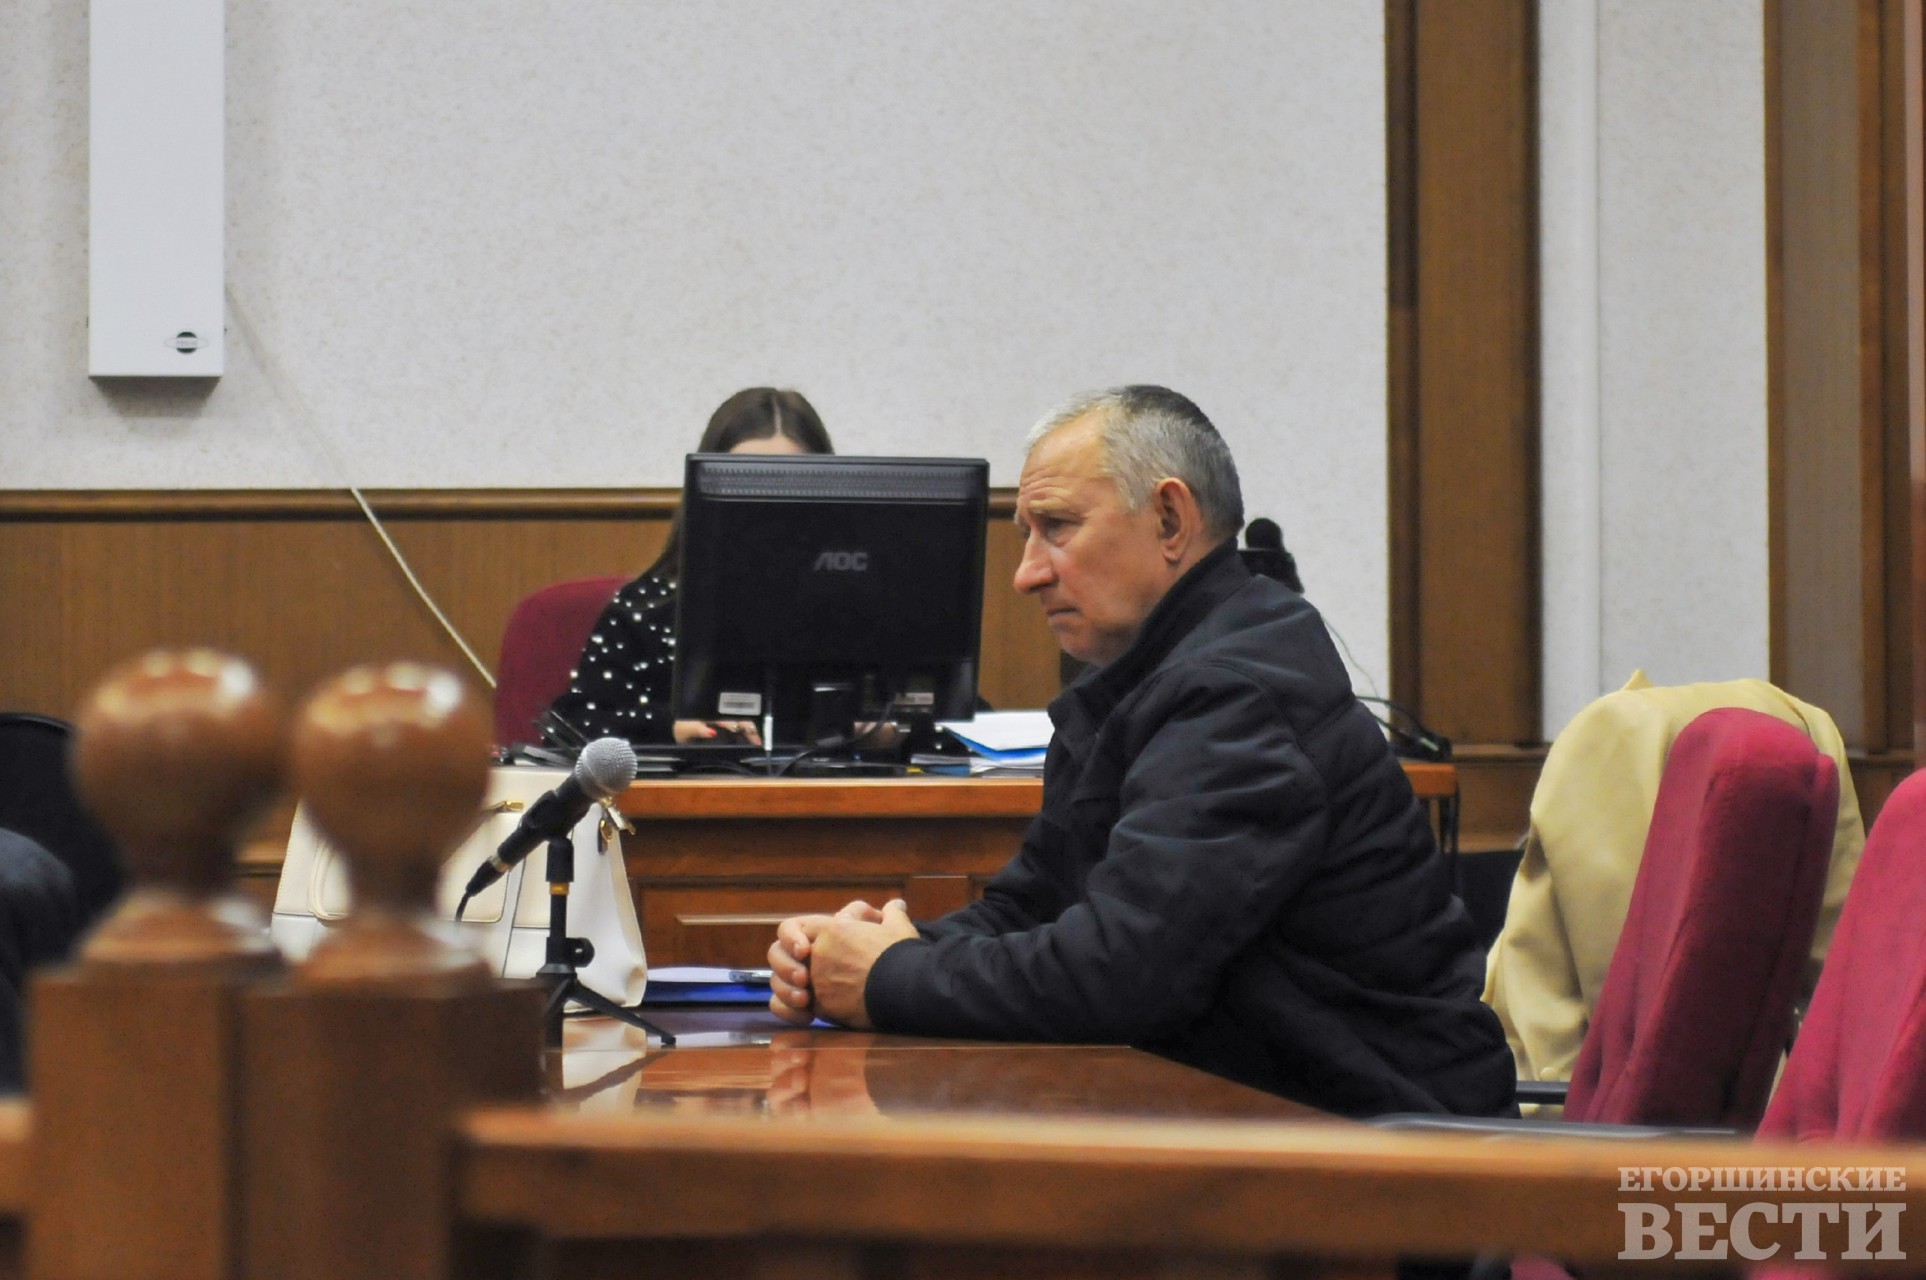 Геннадий Виноградов в суде выглядел потерянным. Фото: Петр Александров, 